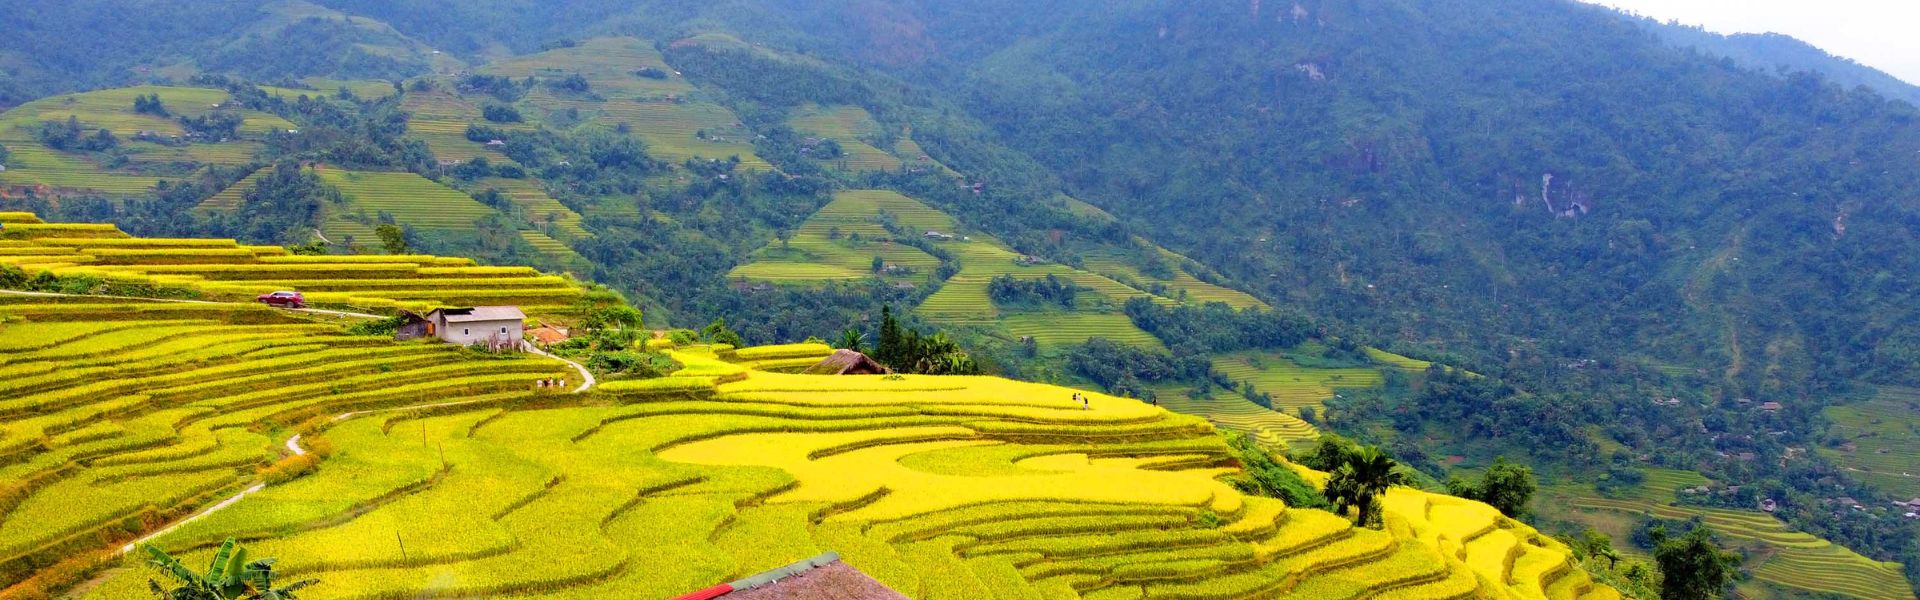 Ha Giang: Sehenswürdigkeiten und Aktivitäten | Vietnam Reisen